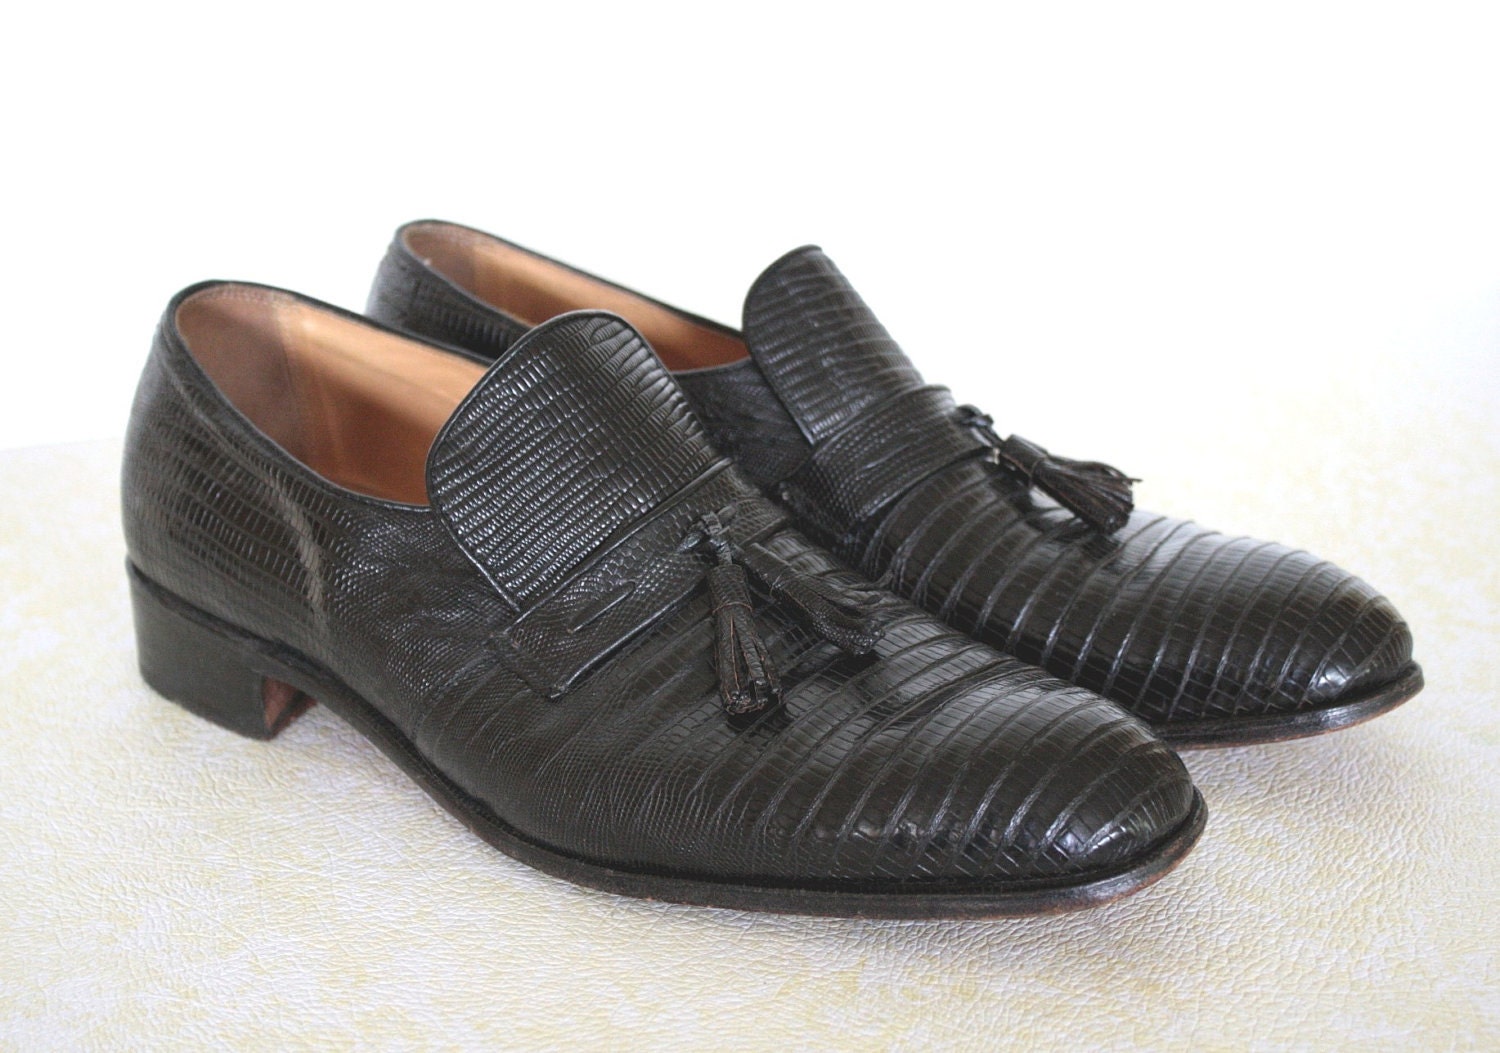 Mens Black Vintage Shoes 1970s Loafers Lizard NETTLETON